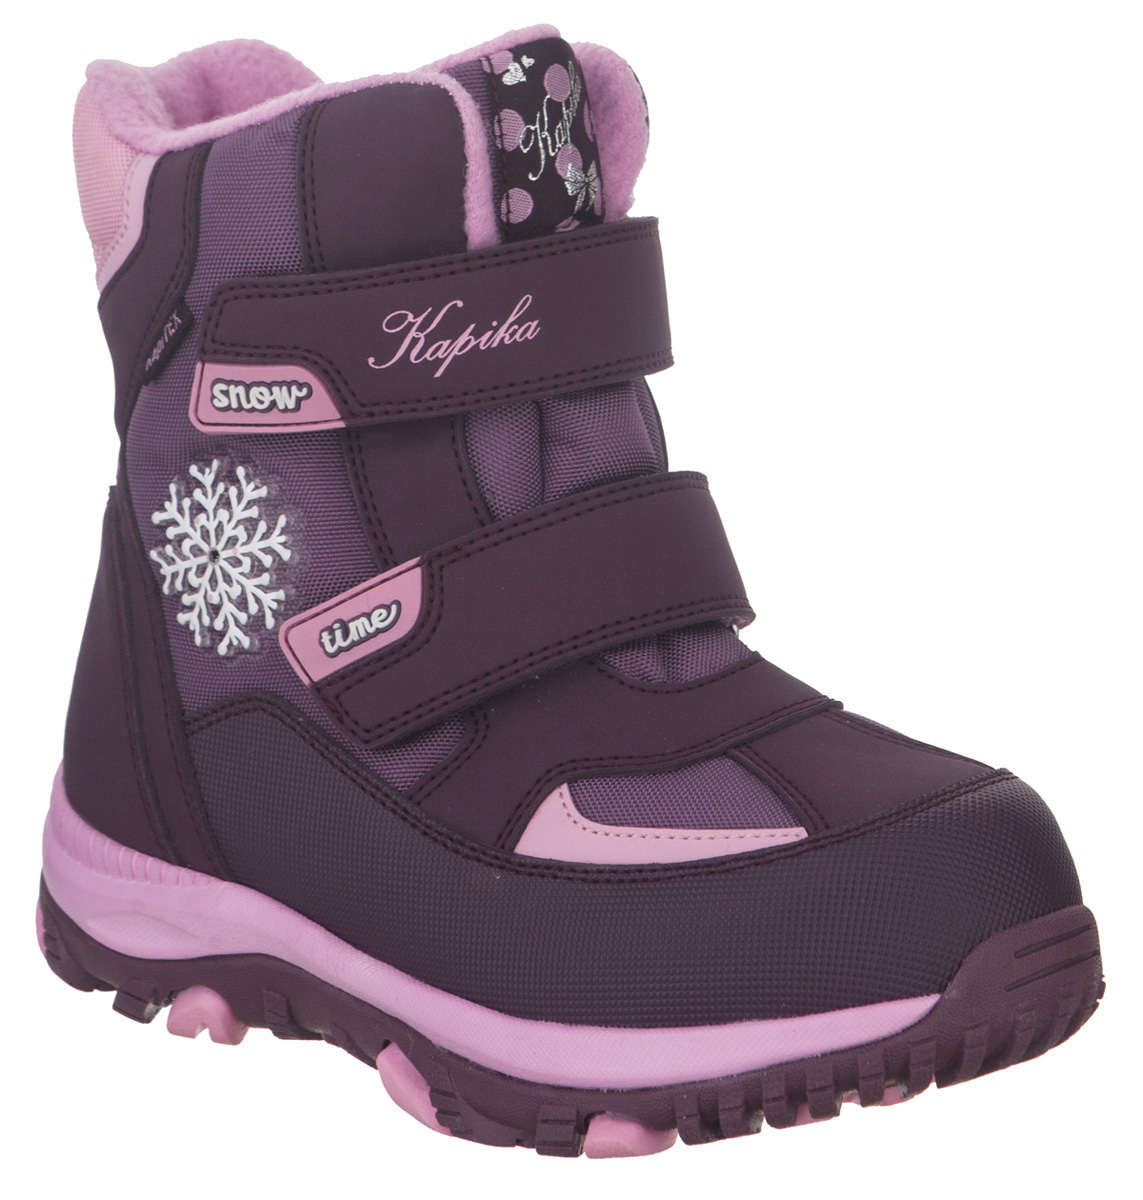 Ботинки для девочки Kapika KapiTEX, цвет: фиолетовый. 42236-1. Размер 32